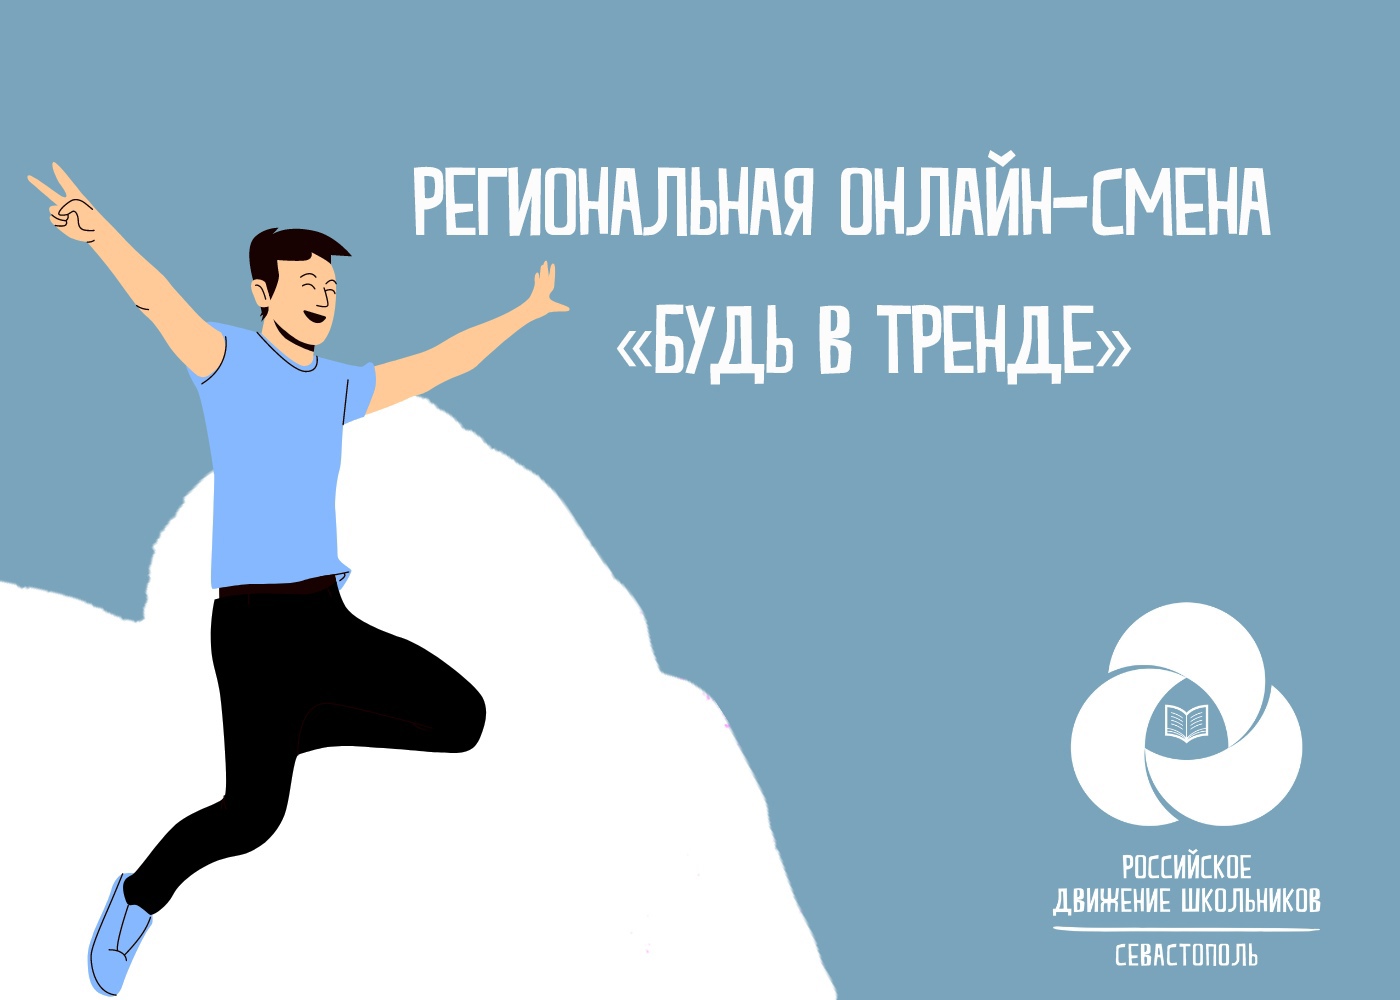 В Севастополе прошла региональная онлайн-смена "Будь в тренде!"